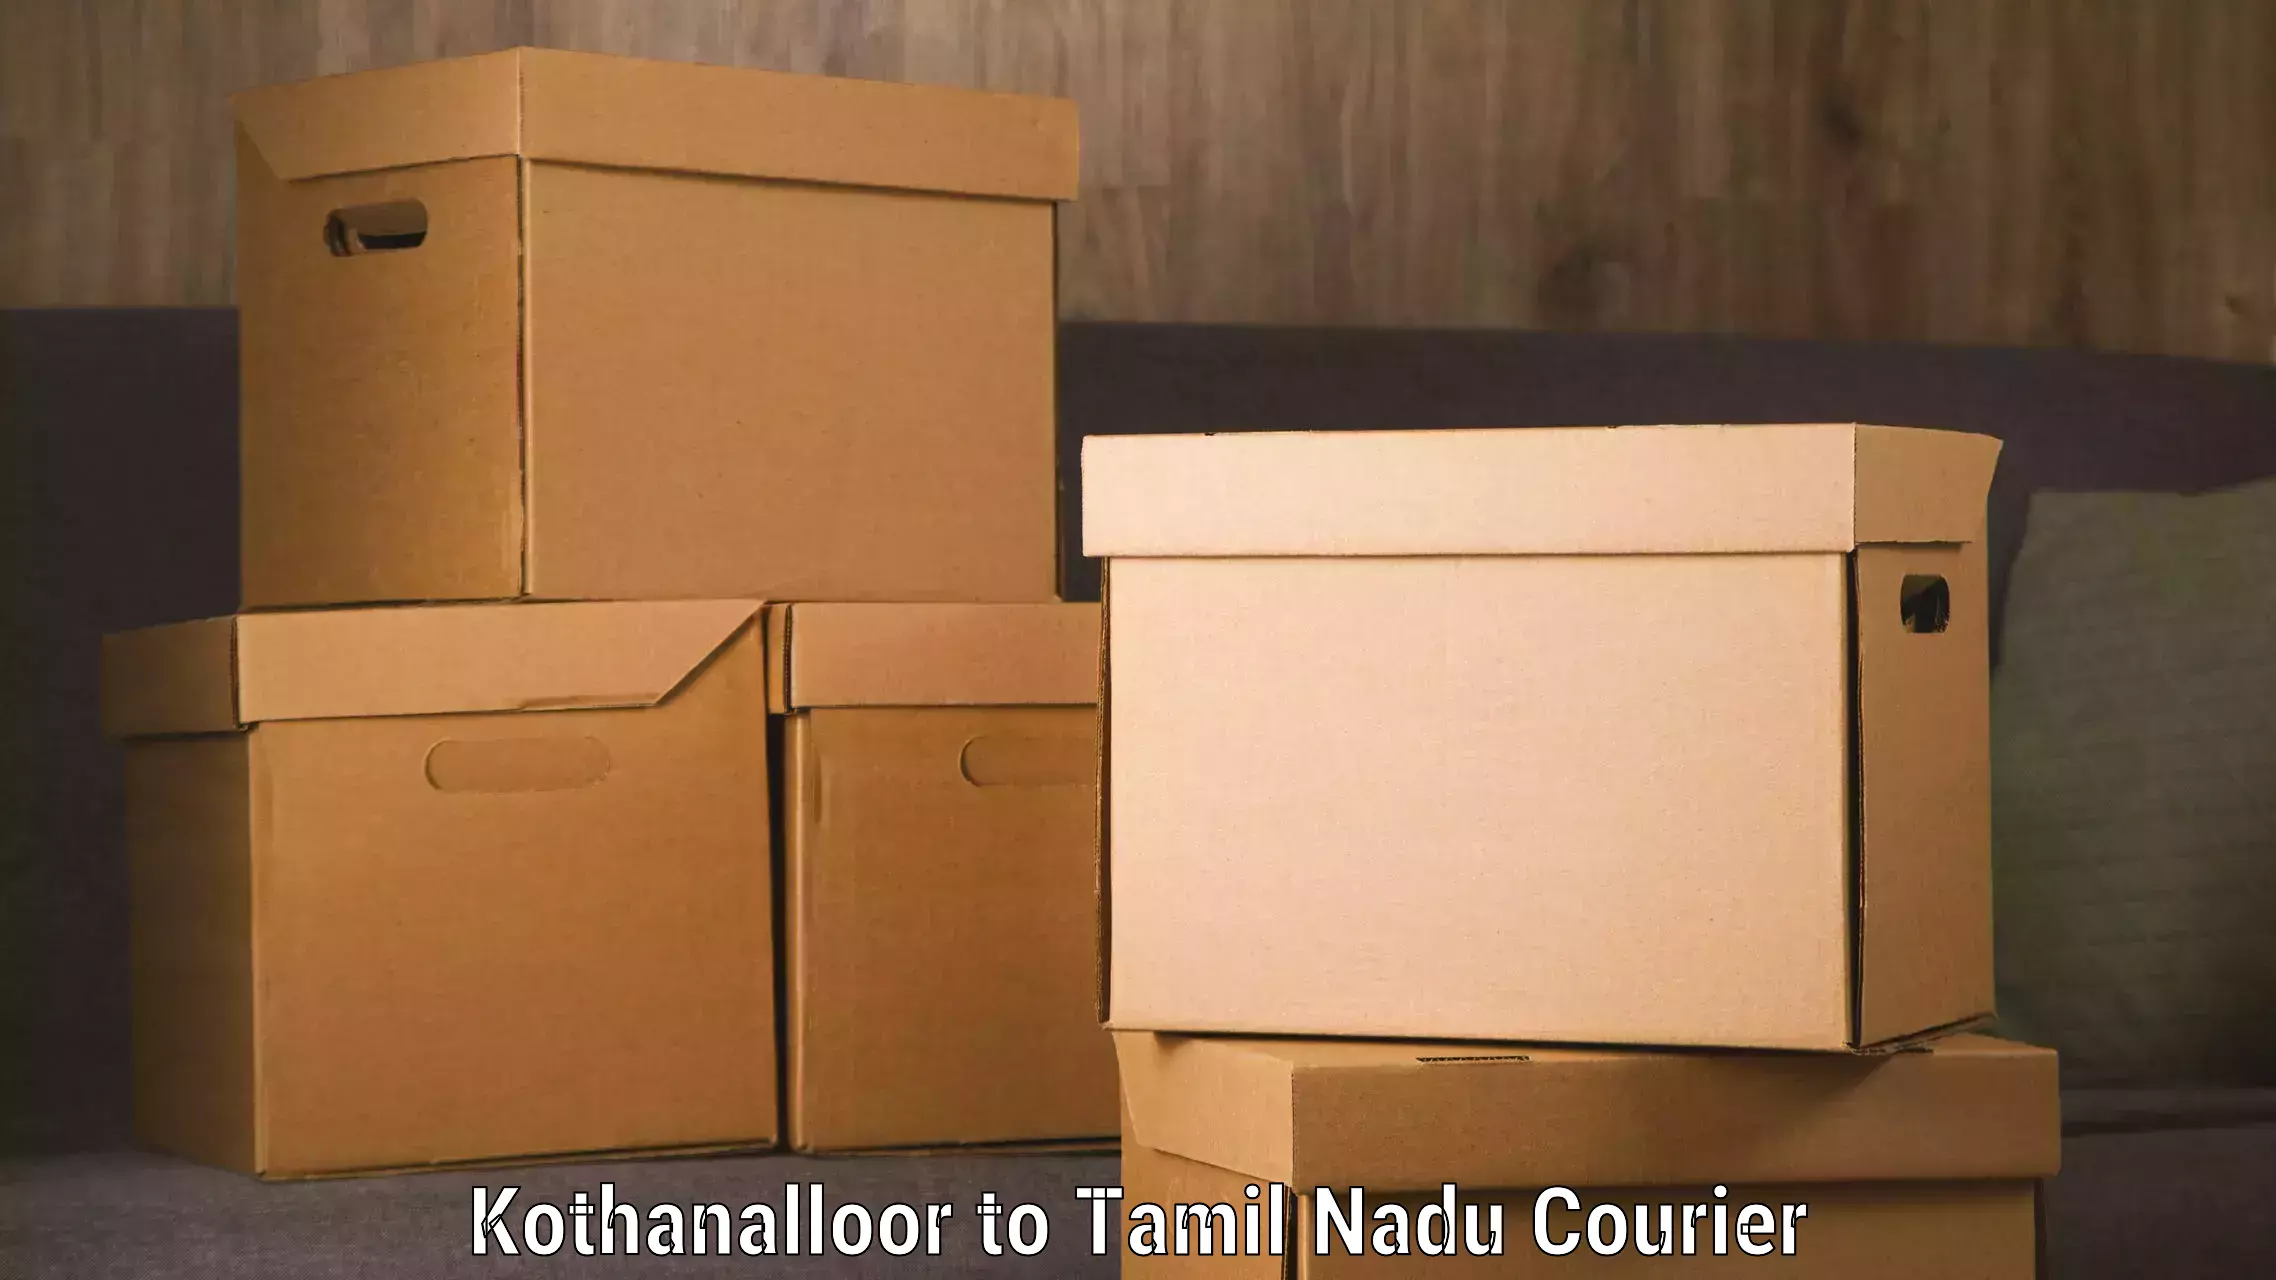 Courier service comparison Kothanalloor to Tiruchirappalli